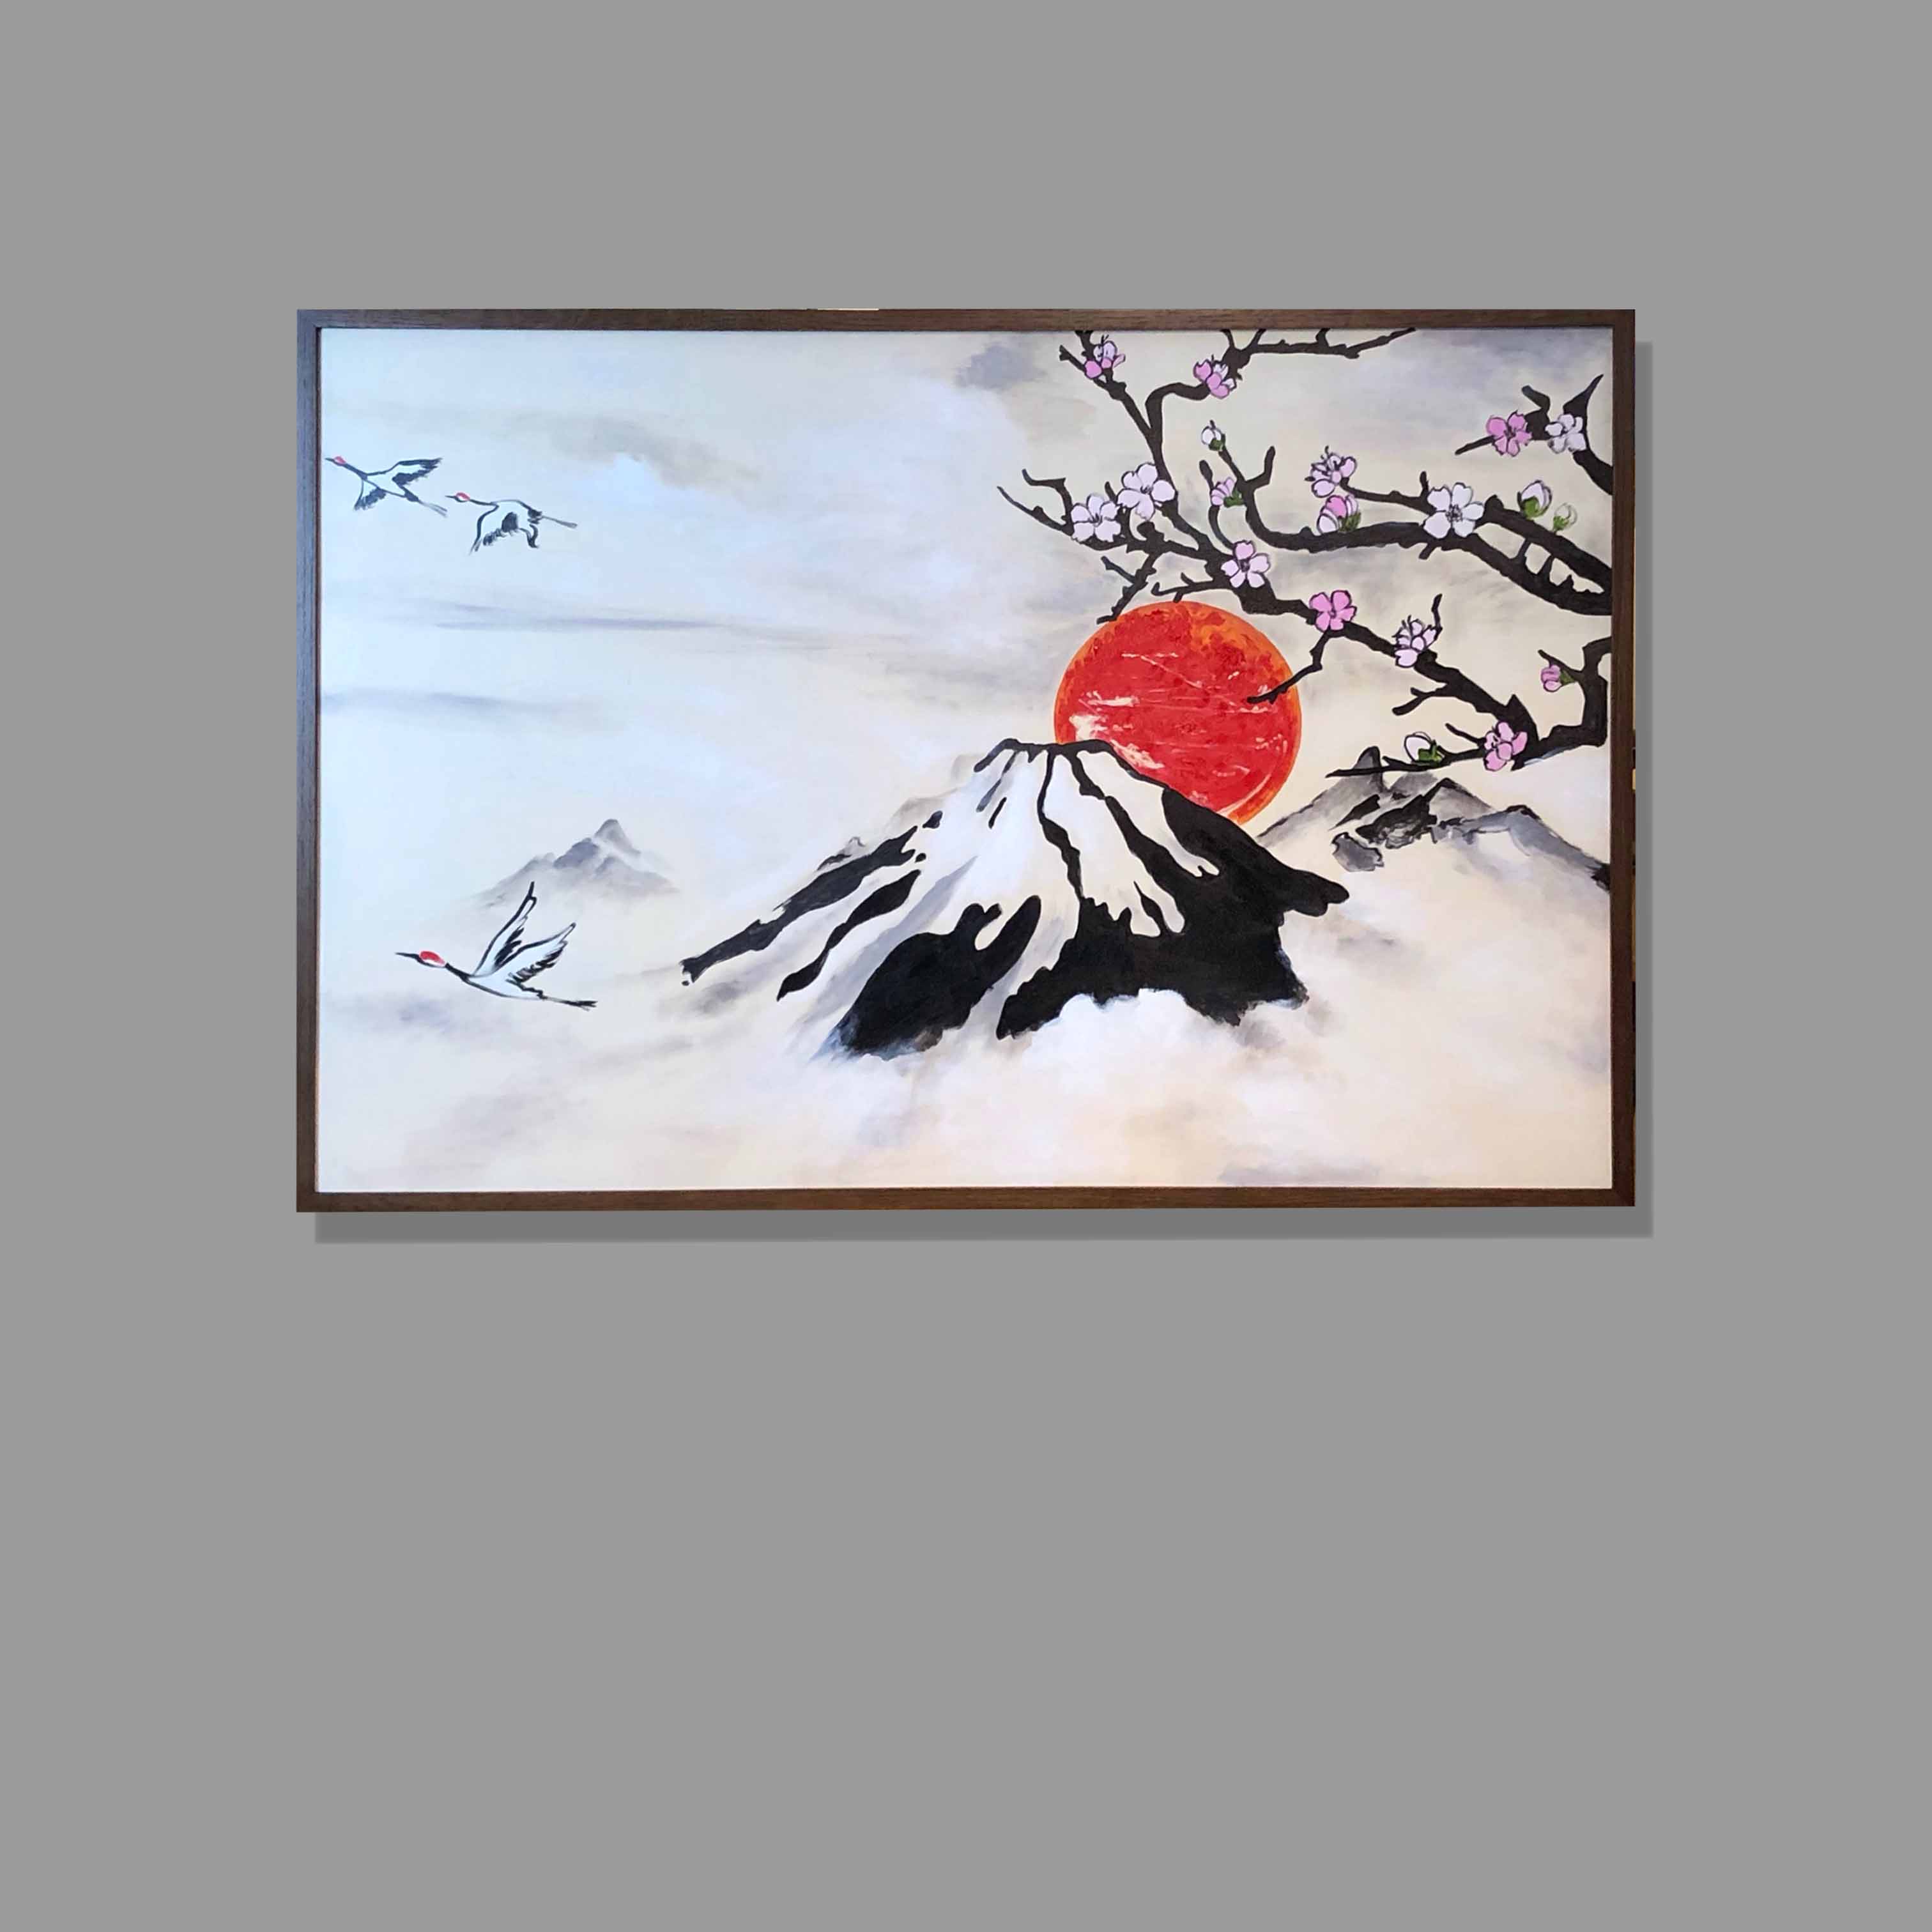 Tranh Sơn Dầu Phong Cảnh Núi Phú Sĩ Nhật Bản - Tsd565Lhar - Lehais Art